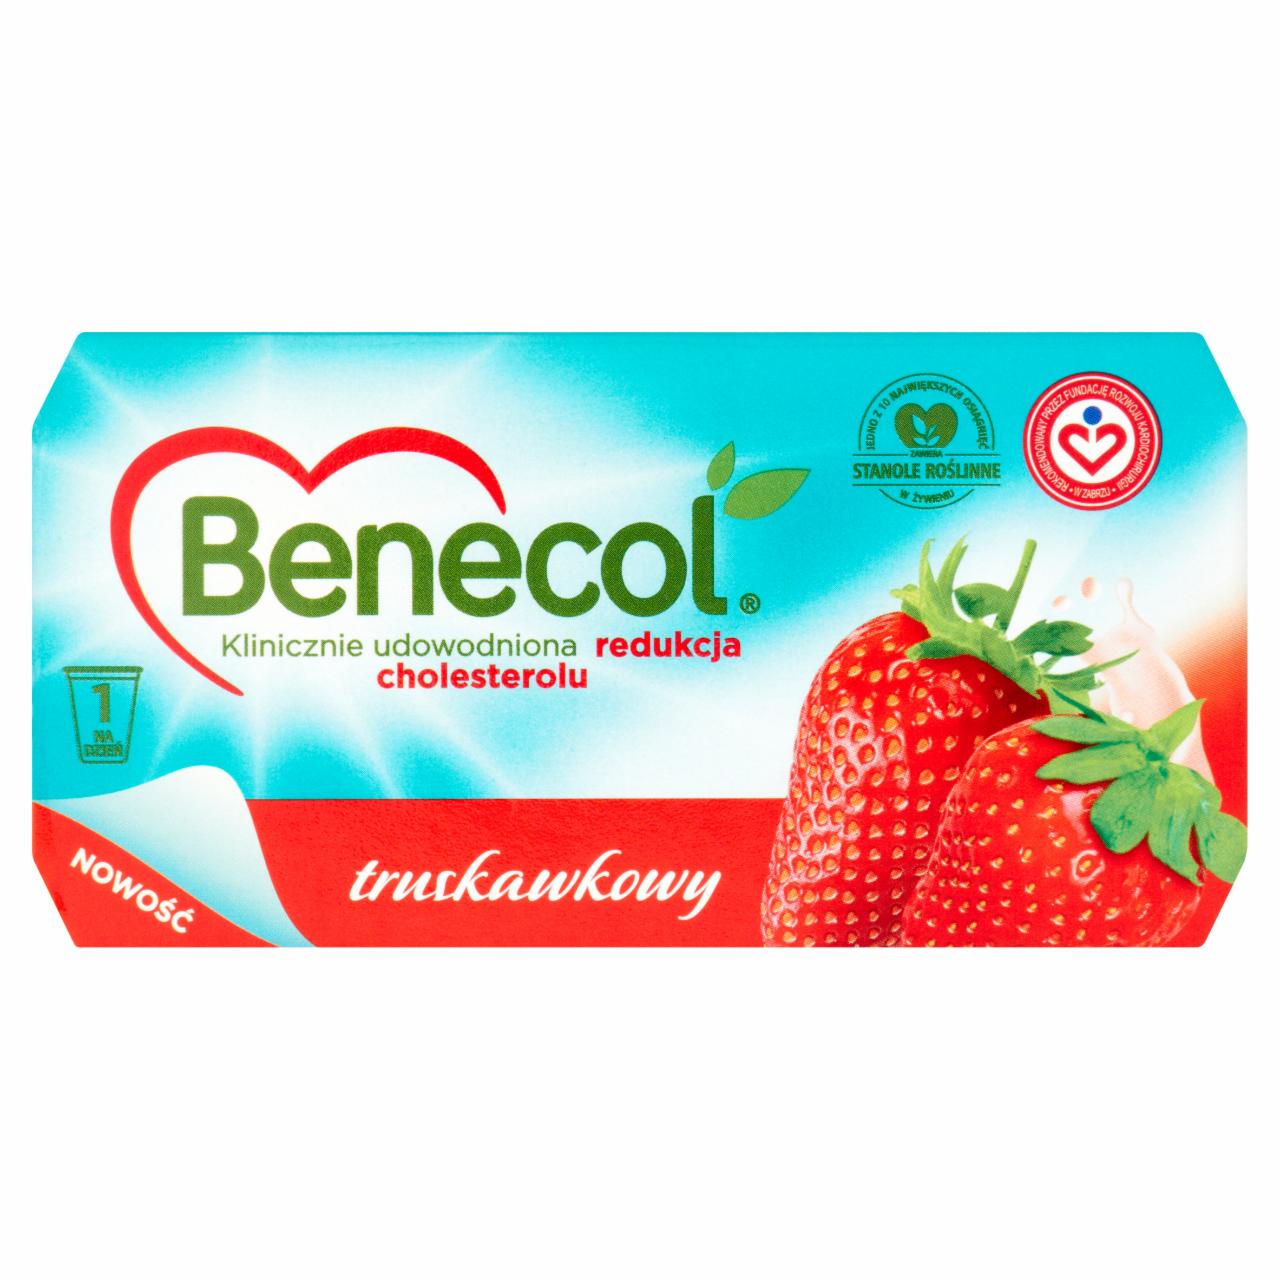 Zdjęcia - Benecol z truskawkami Produkt mleczny truskawkowy z dodatkiem stanoli roślinnych 250 g (2 sztuki)